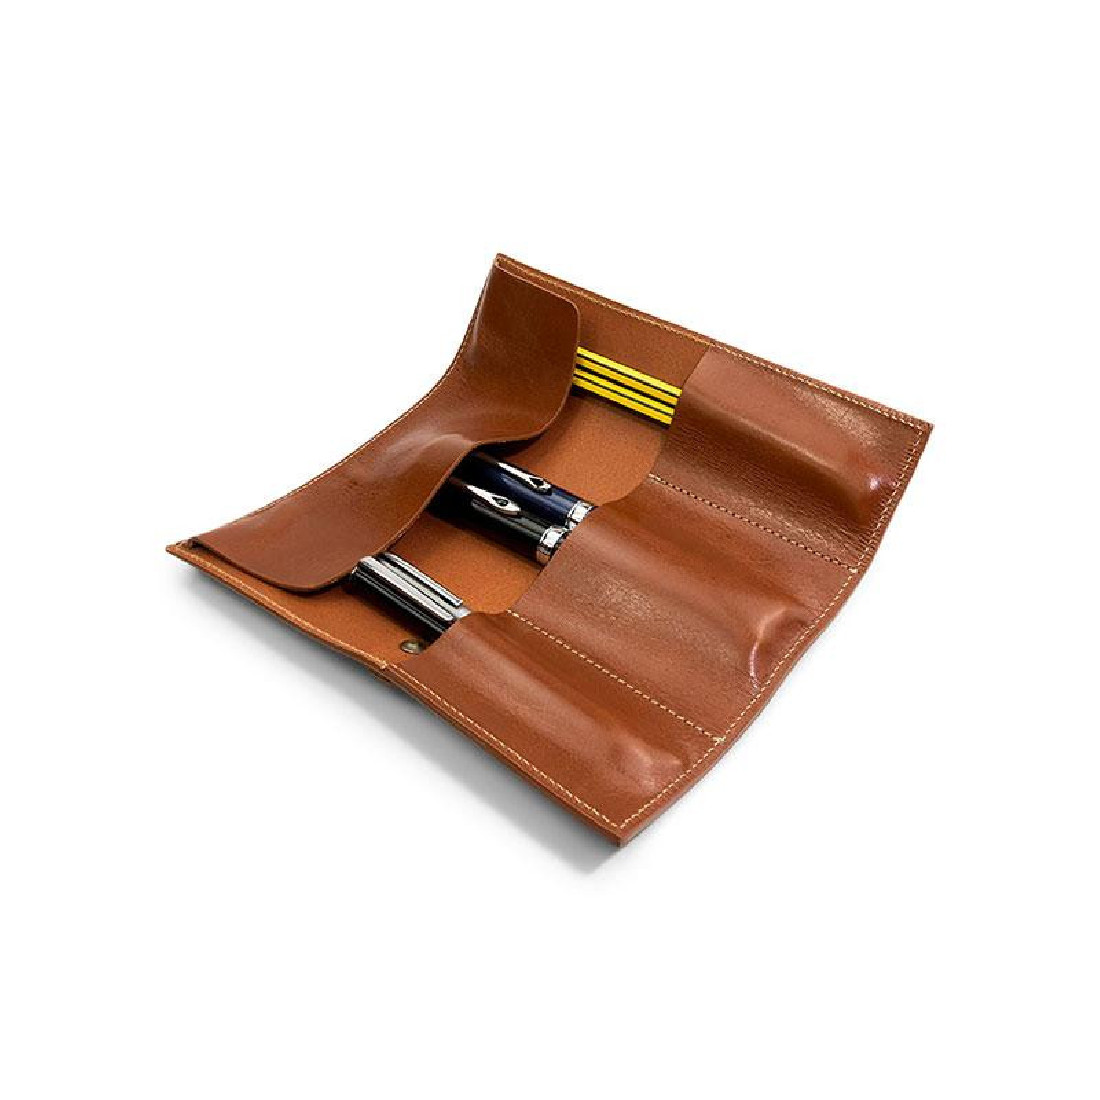 Paper Republic cognac leather pen & pencil case